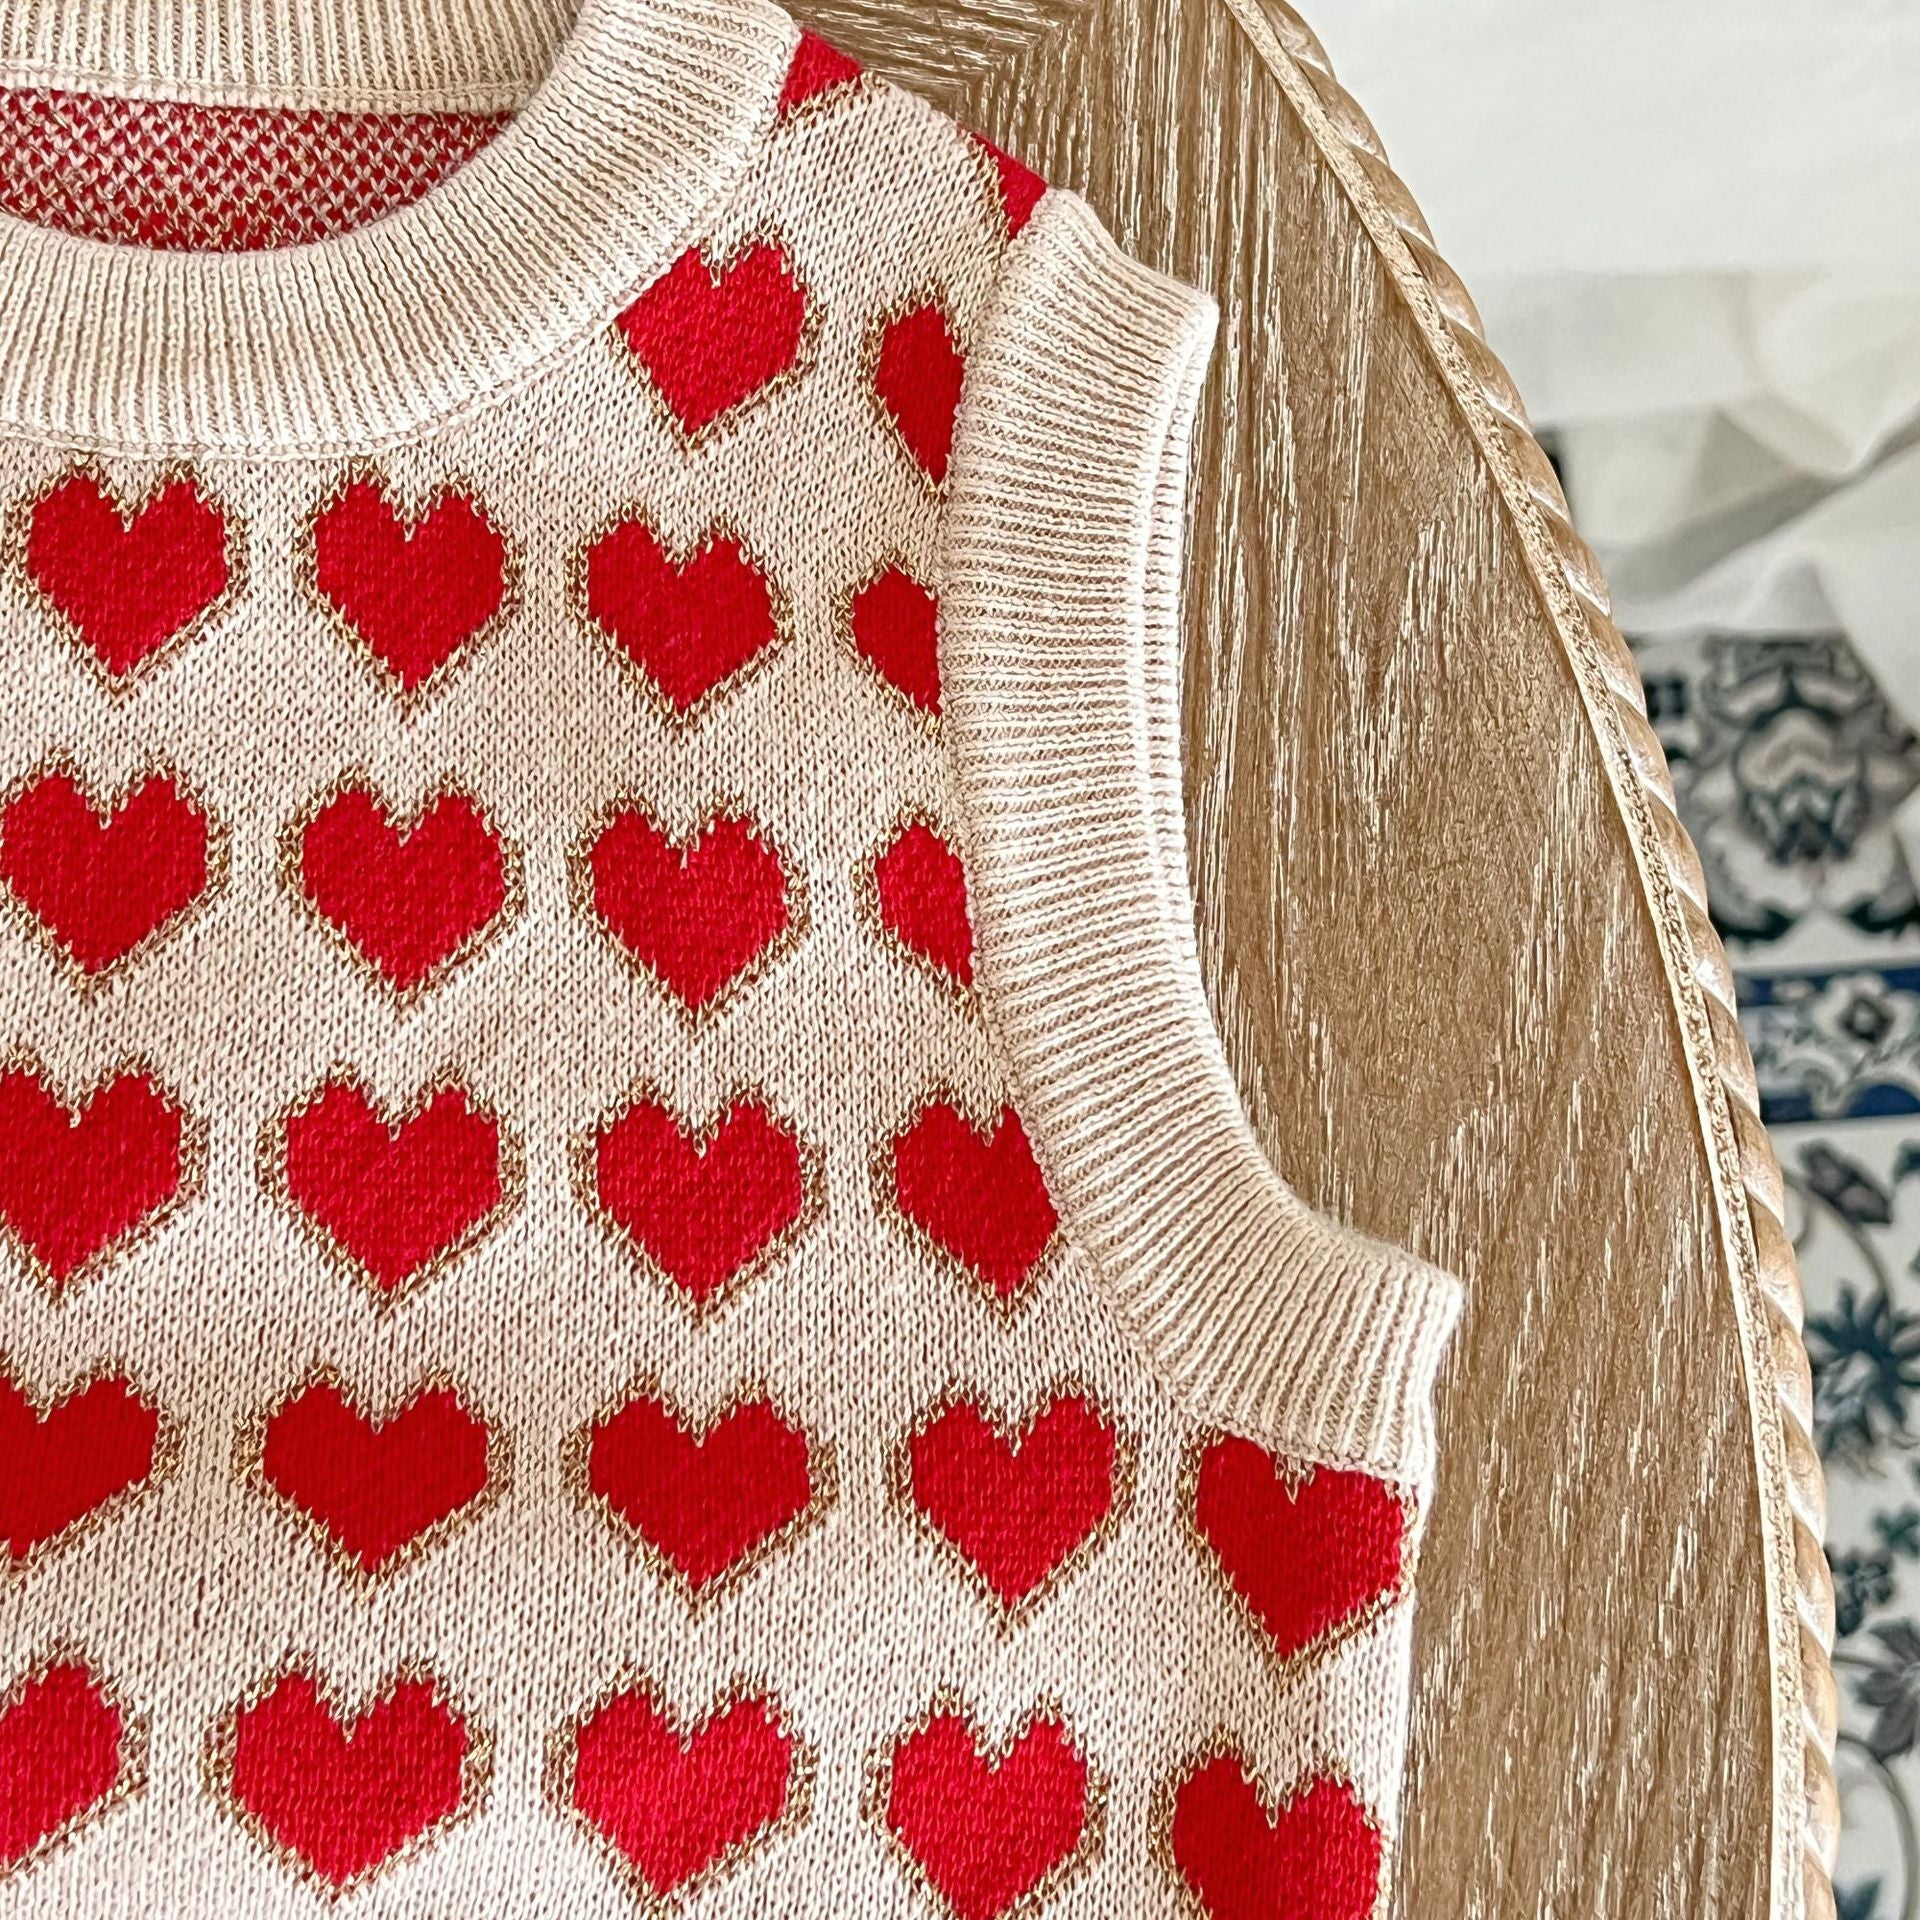 Baby Girl Heart Pattern Round Neck Sleeveless Knit Vest My Kids-USA